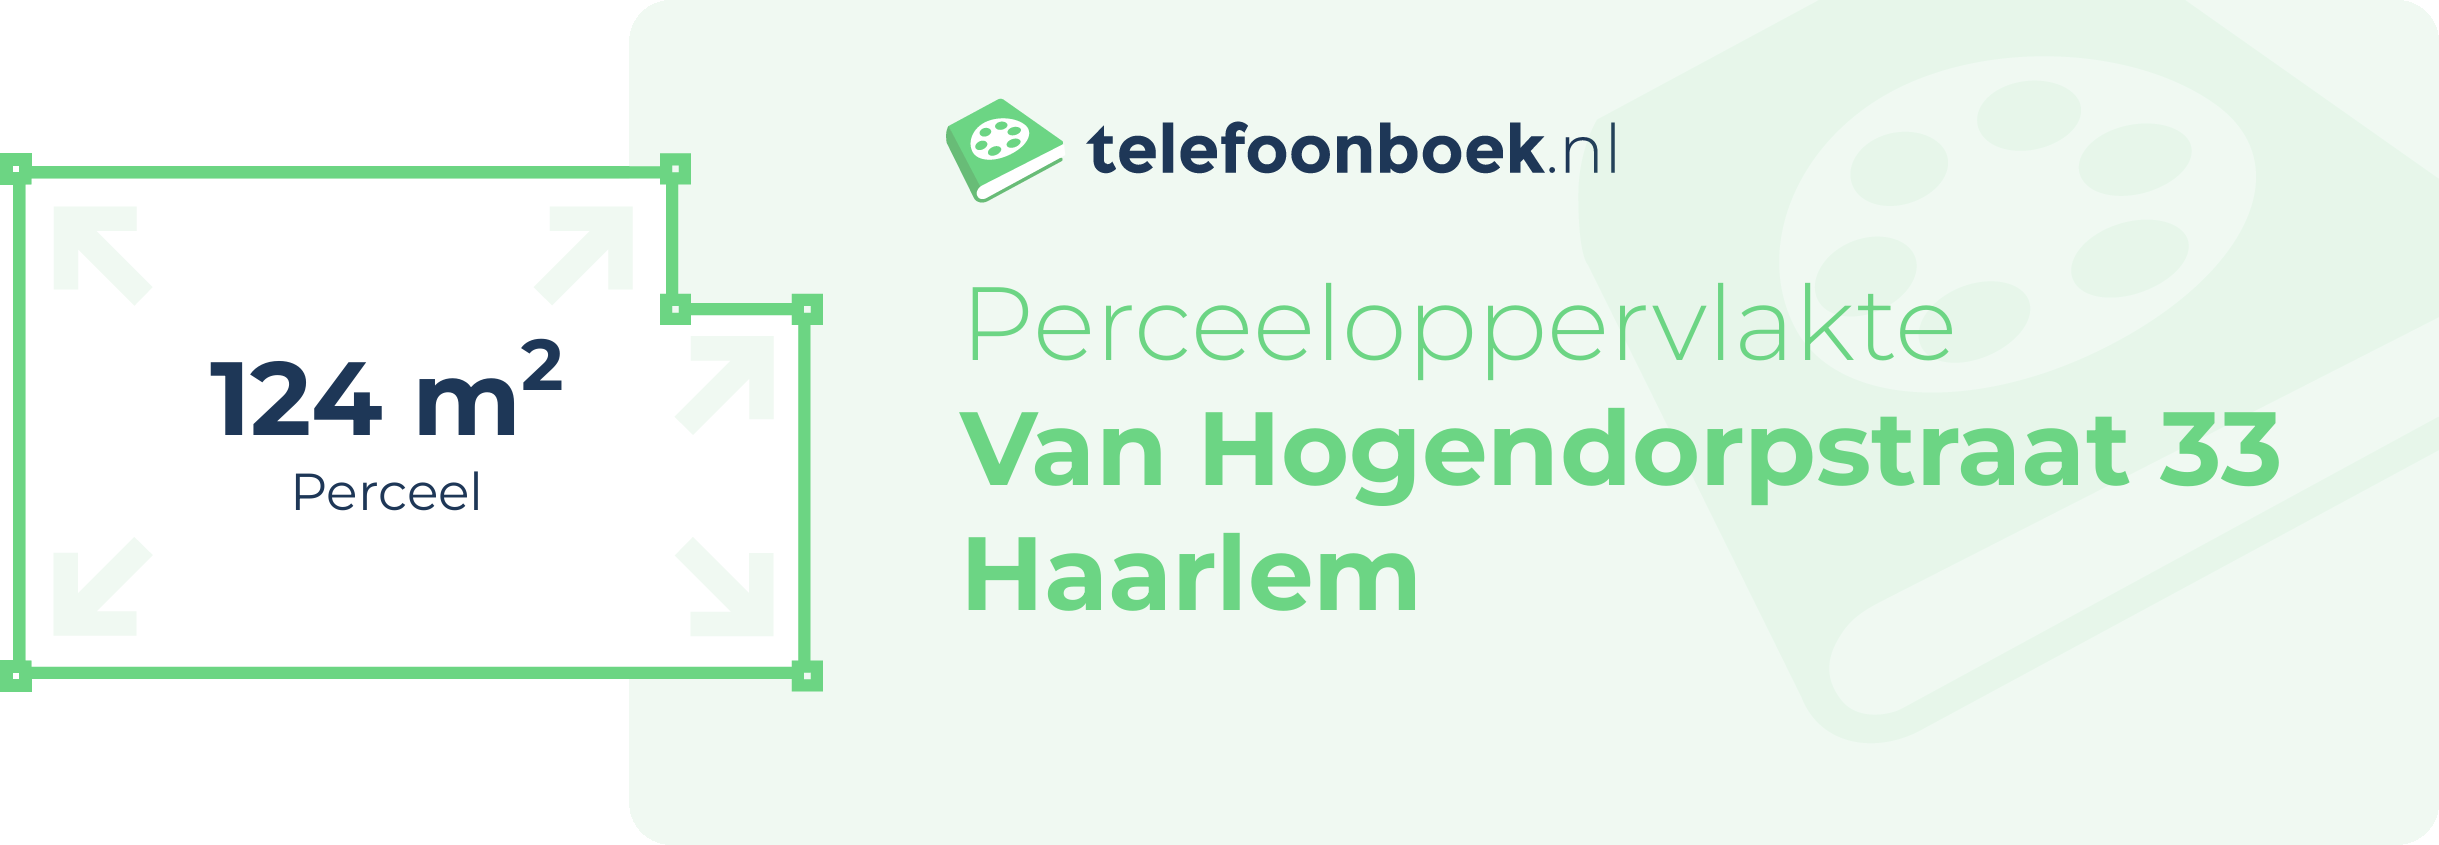 Perceeloppervlakte Van Hogendorpstraat 33 Haarlem